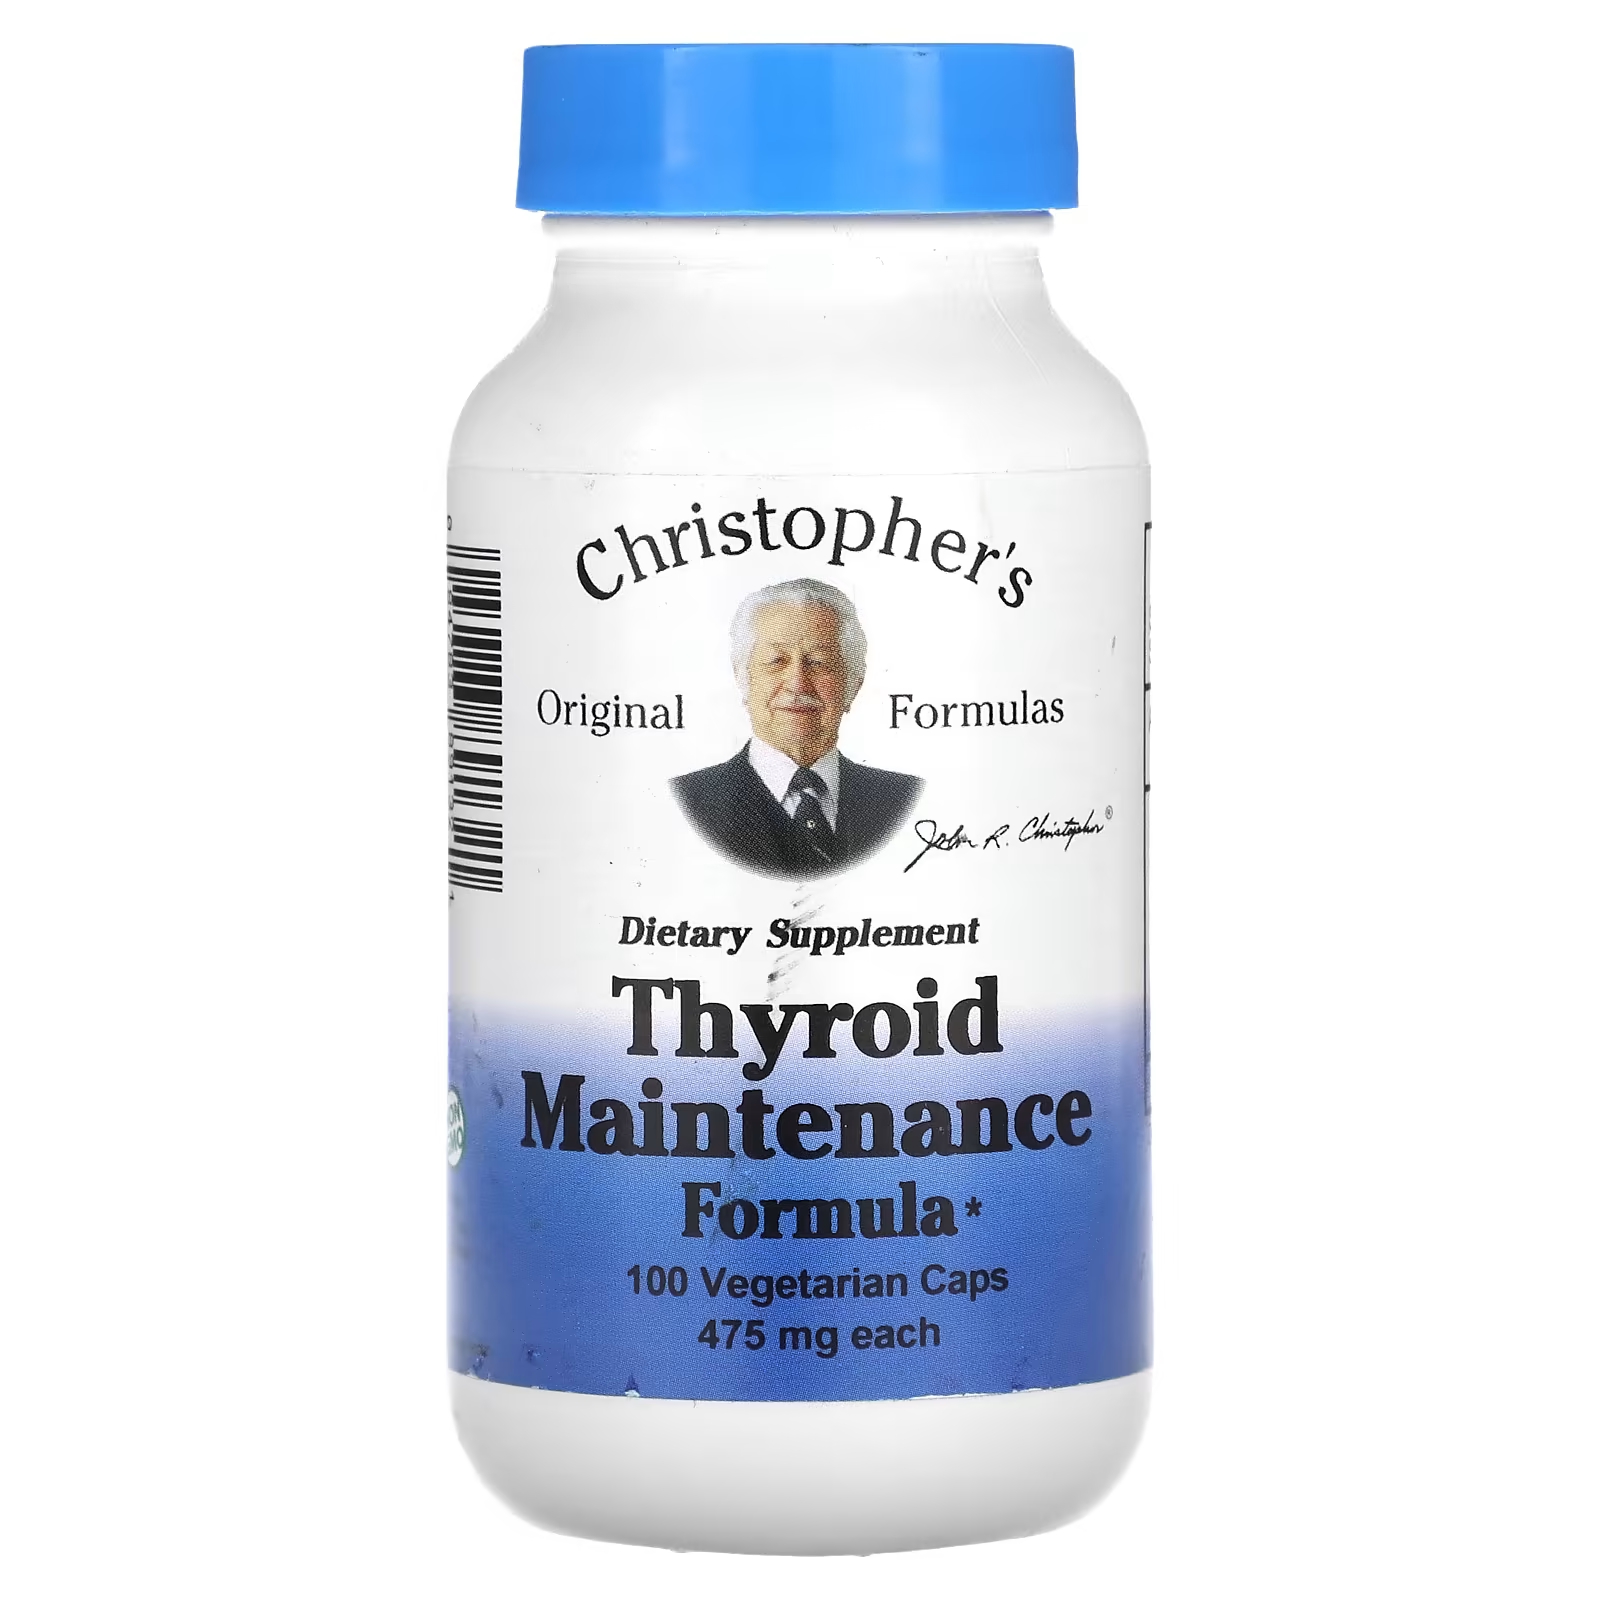 Формула Christopher's Original Formulas 475 мг для поддержания щитовидной железы, 100 капсул christopher s original formulas формула для мочевого пузыря 475 мг 100 вегетарианских капсул